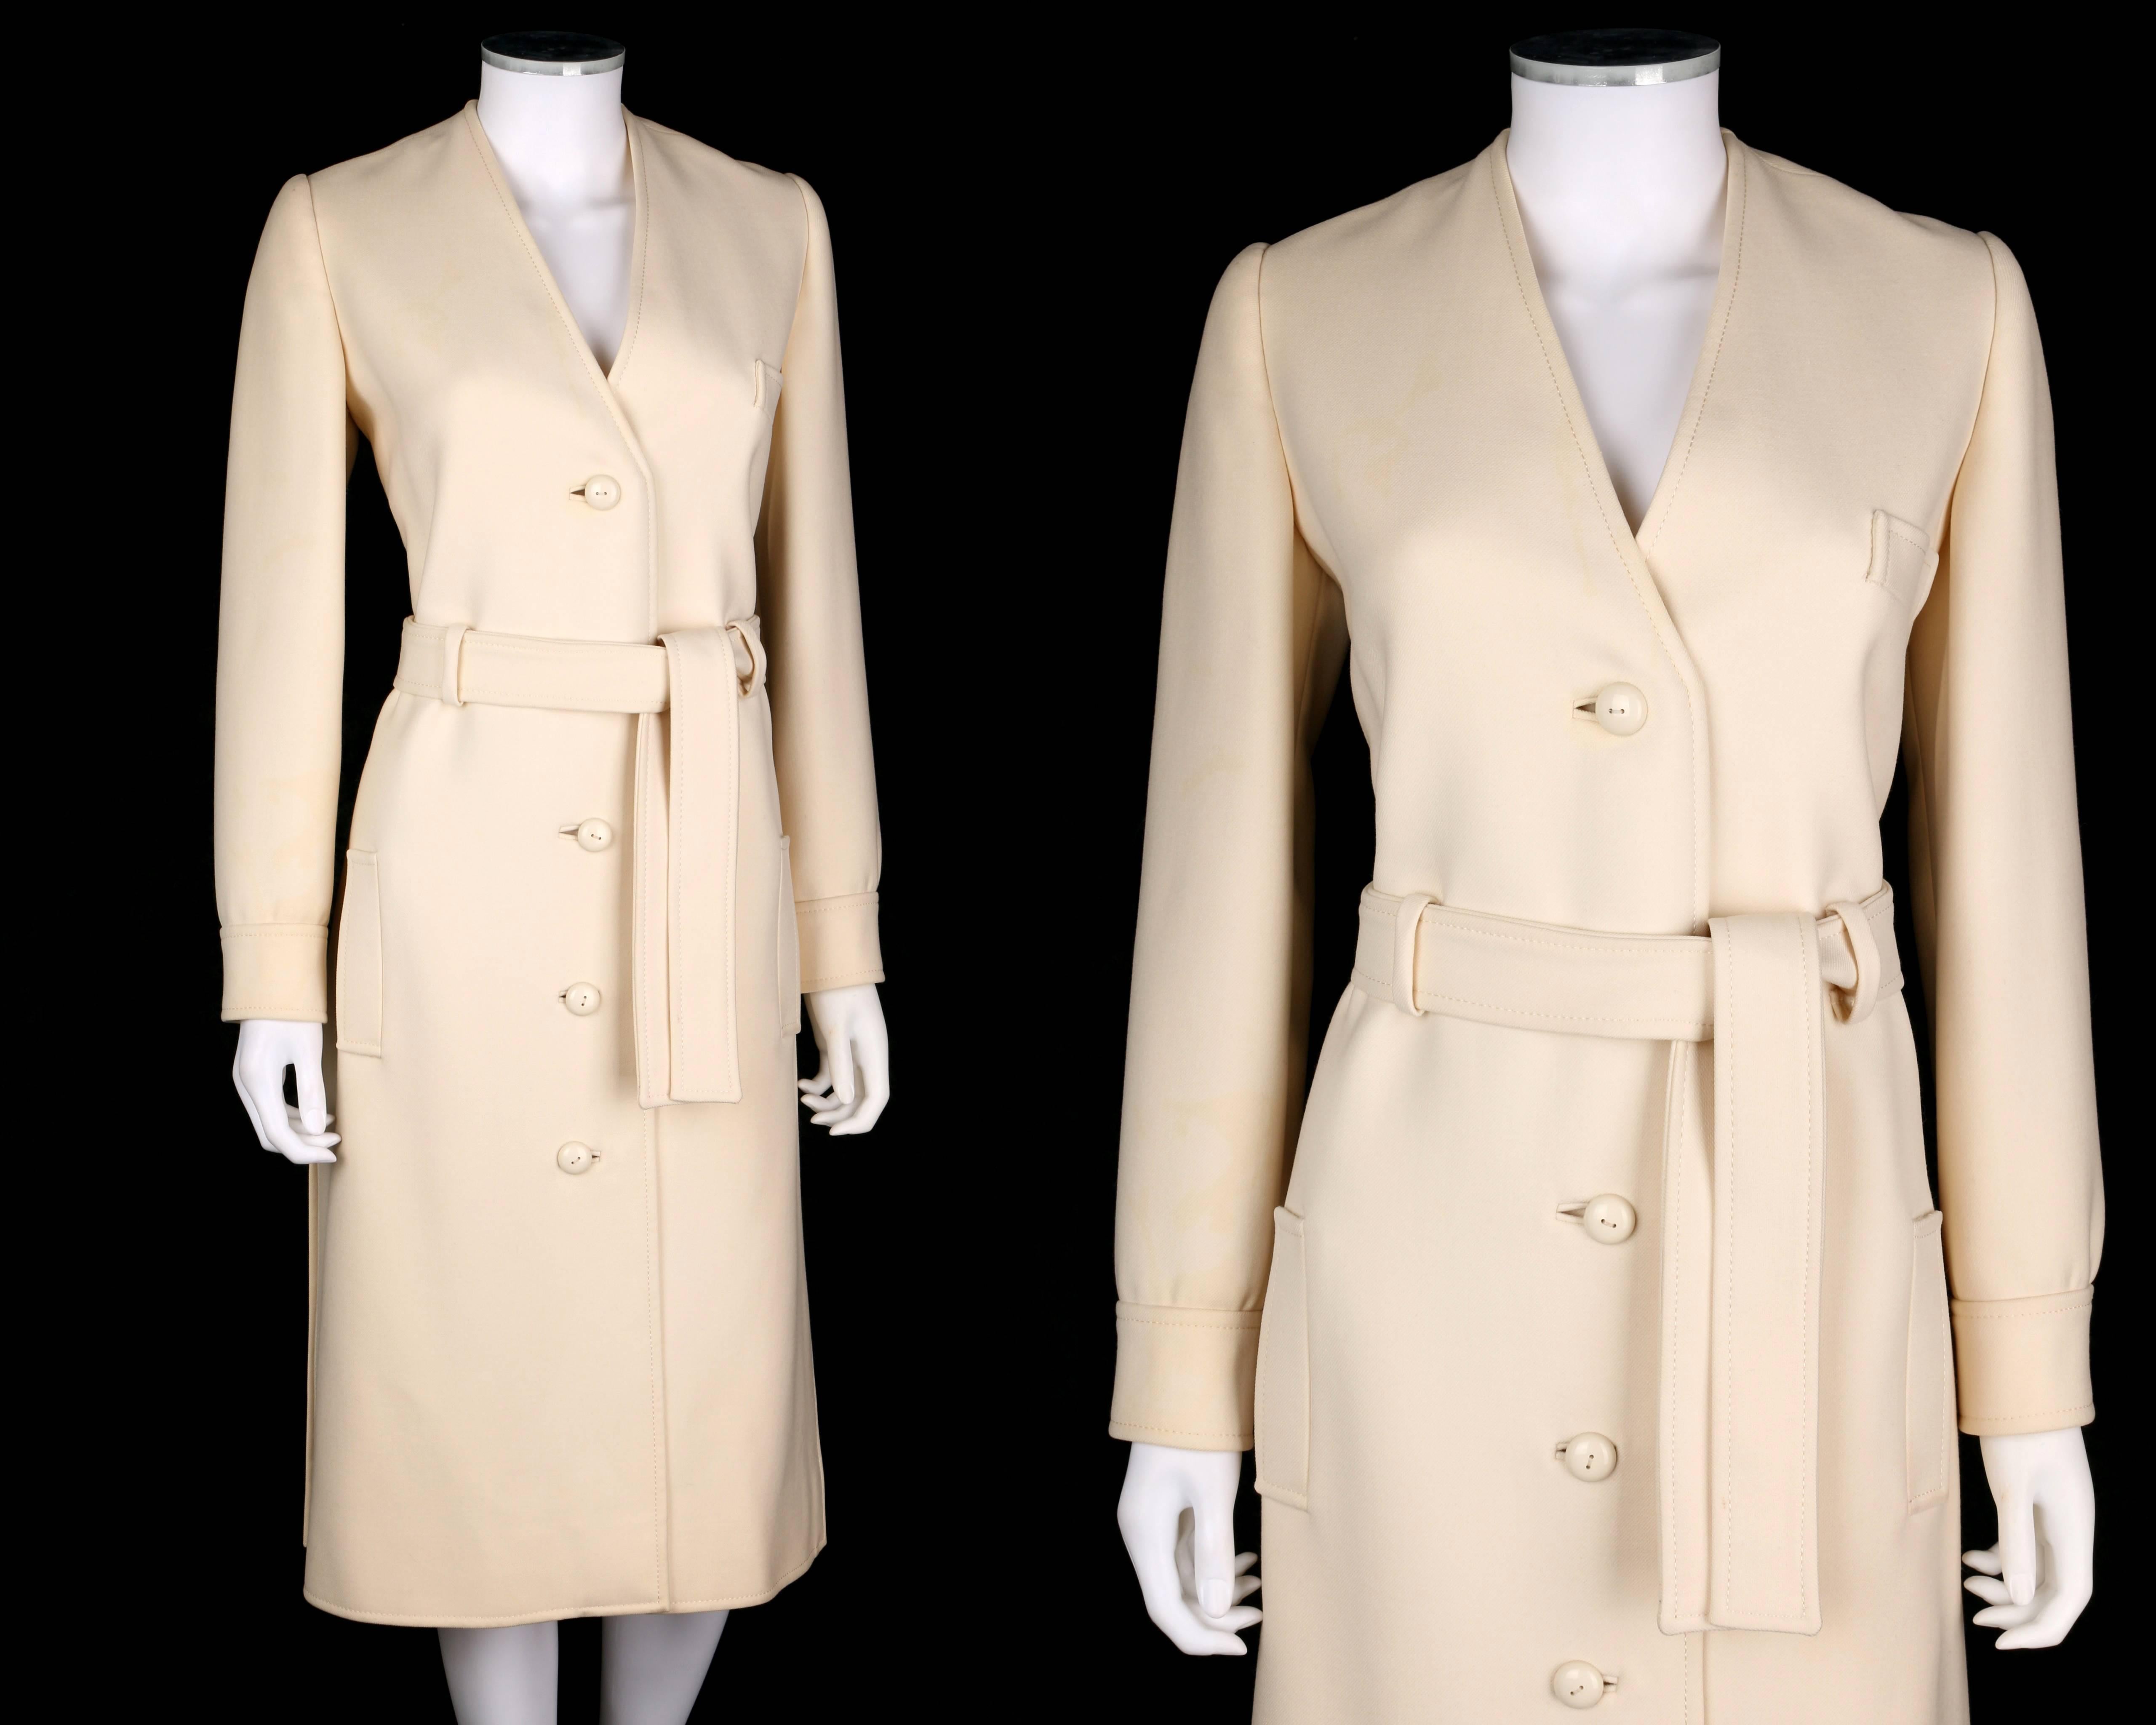 Seltene Vintage Boutique Valentino c.1960's aus weißer Wolle gegürtet mod V-Ausschnitt Mantel Kleid. Weiße, schwere Wolle. Lange Ärmel mit zwei Knopfverschlüssen am Ärmelabschluss. V-Ausschnitt. Vier Knopfverschlüsse vorne in der Mitte. Einzelne